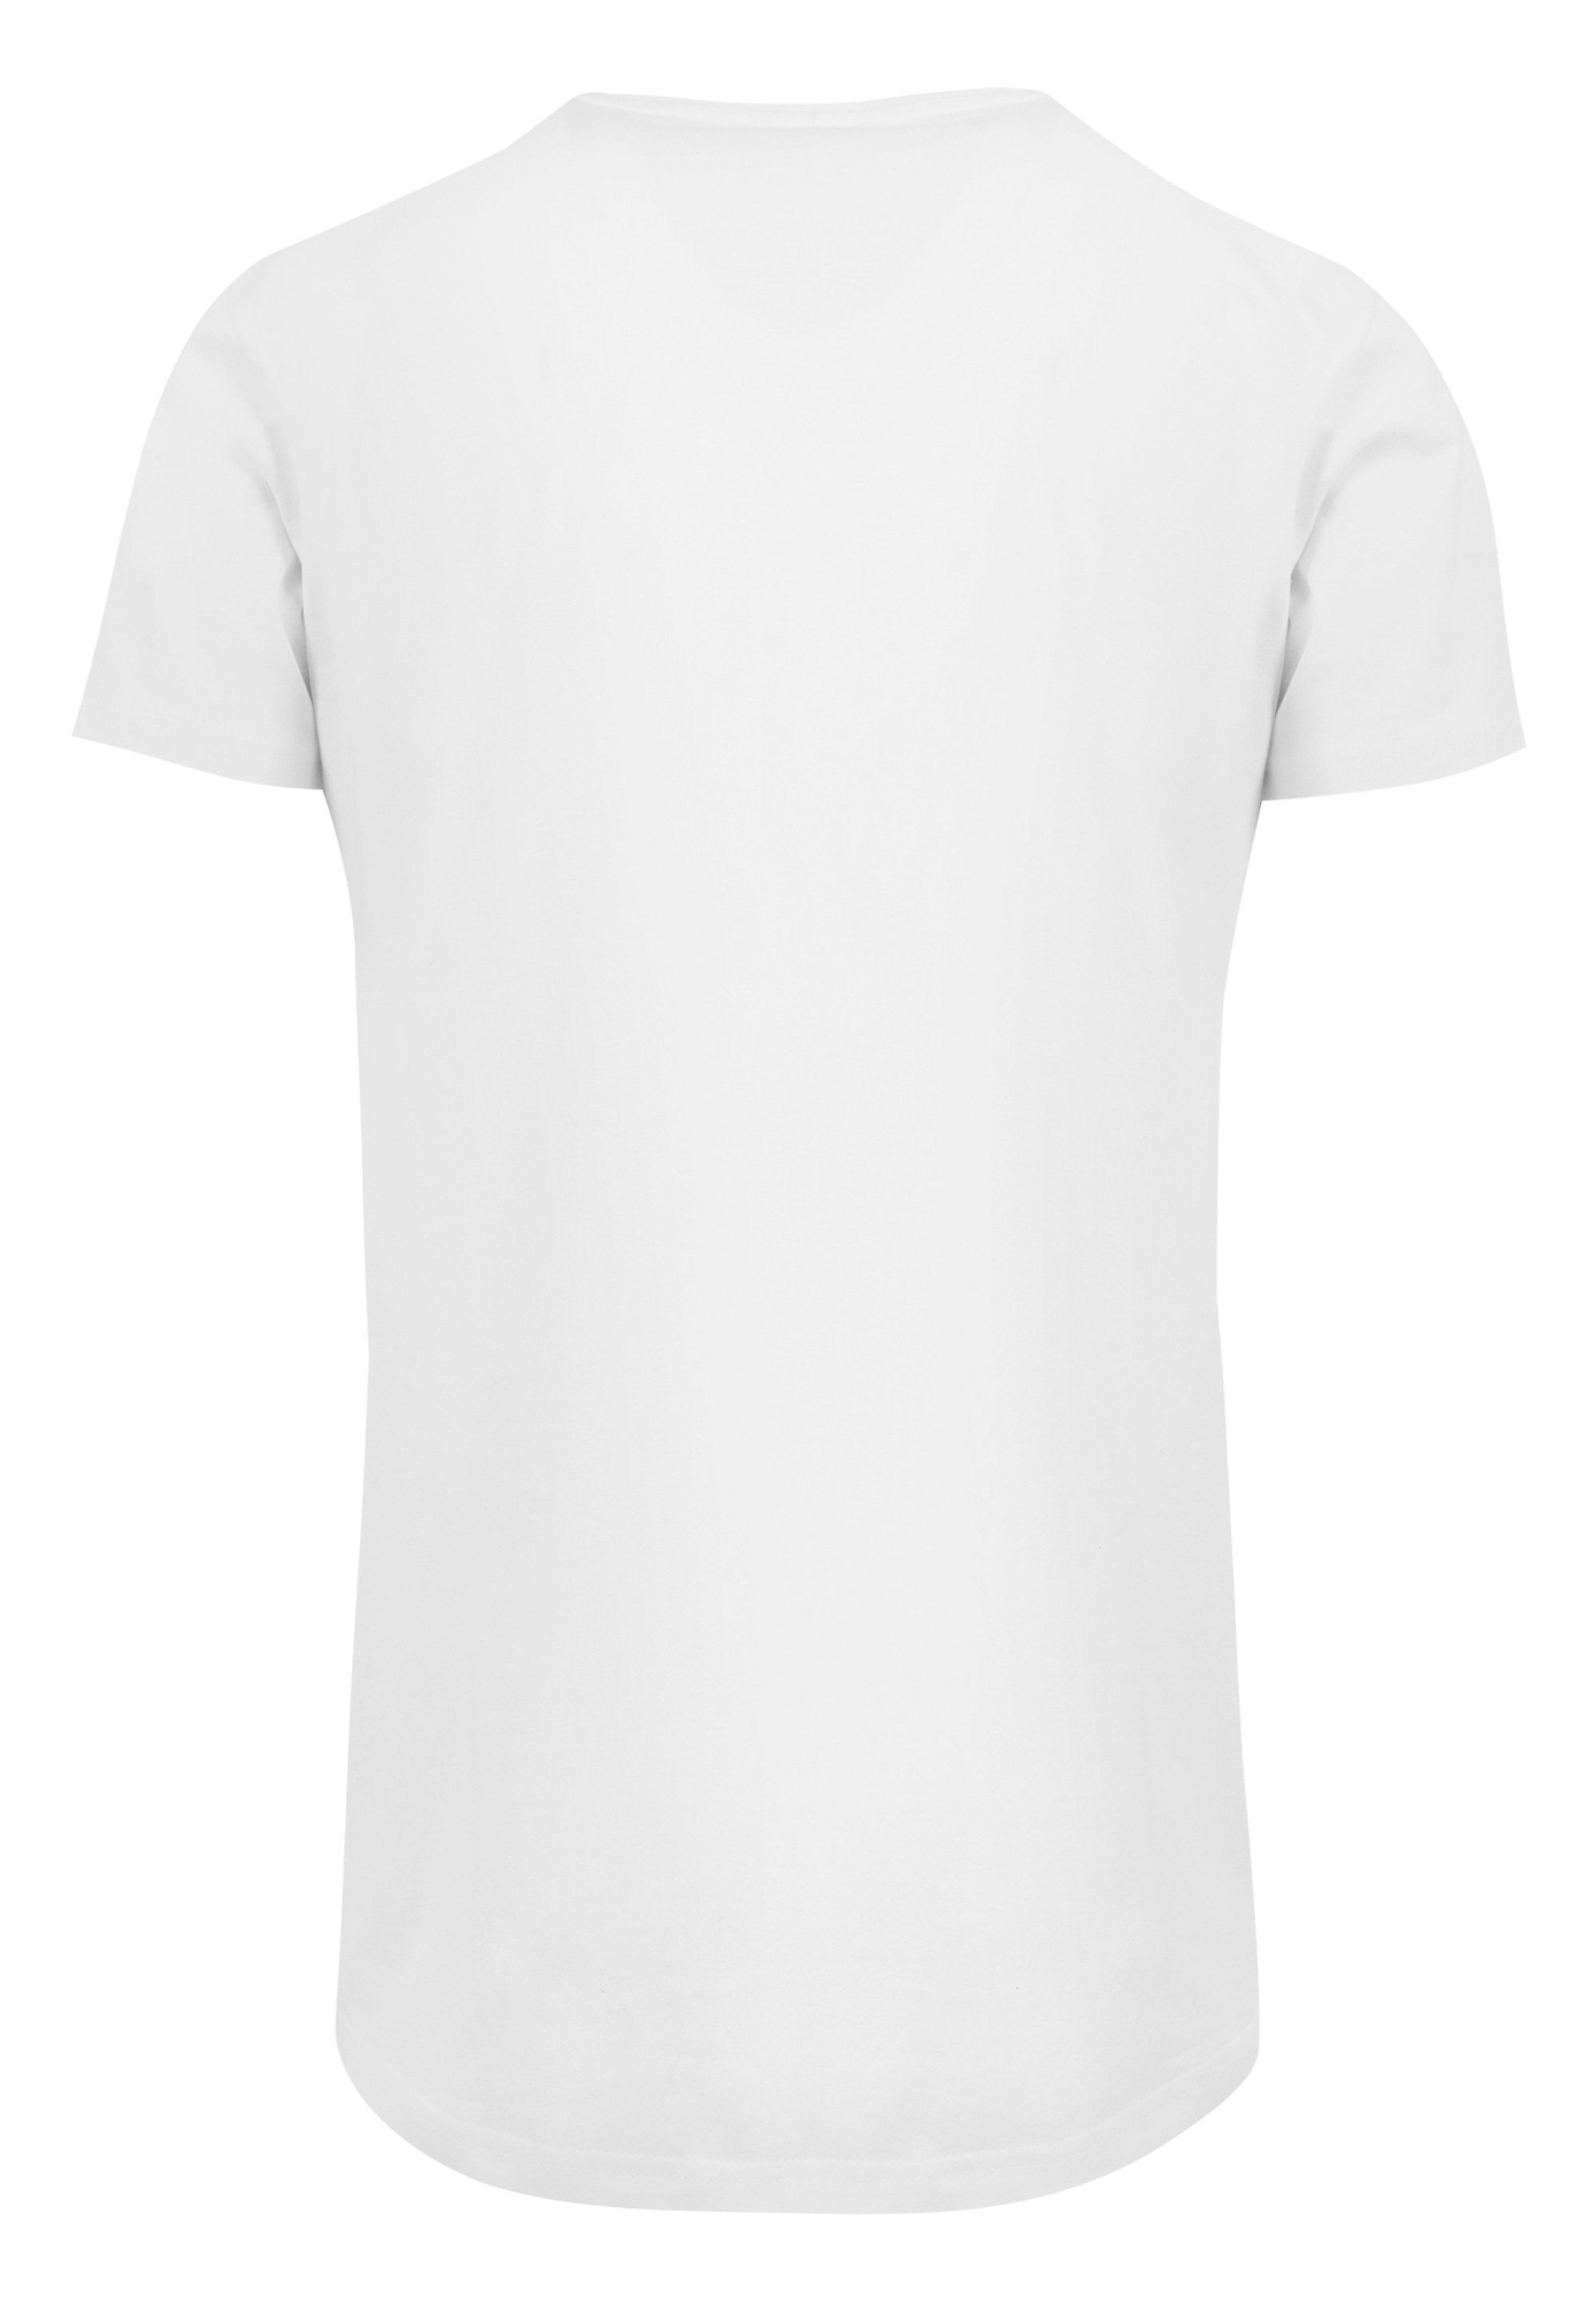 Cut T-Shirt T-Shirt F4NT4STIC Merch,Lang,Longshirt,Bedruckt Long F4NT4STIC Herren,Premium